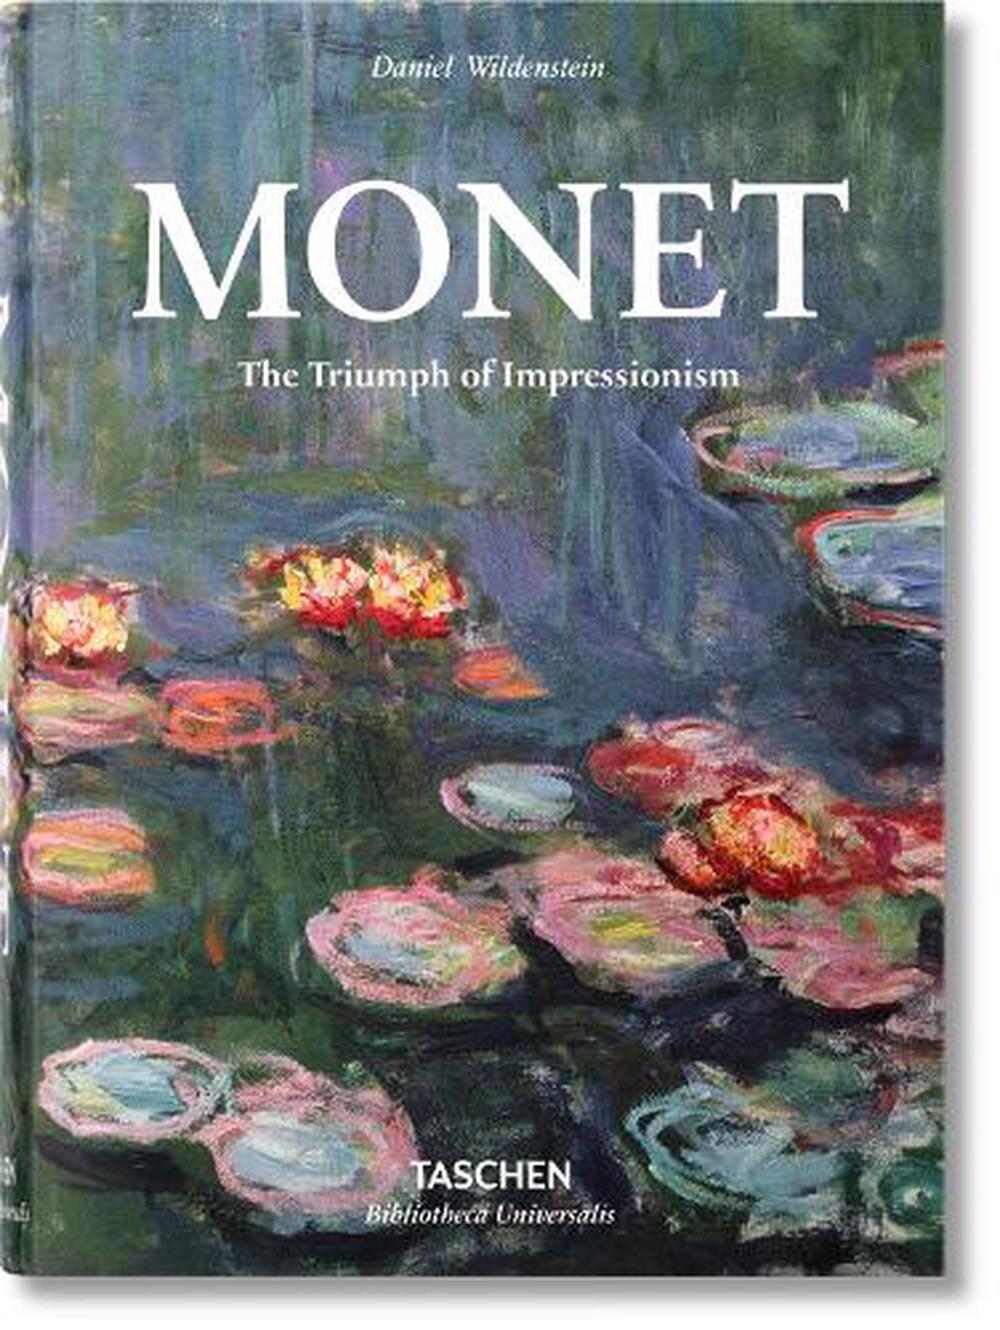 Monet. The Triumph of Impressionism by Daniel Wildenstein